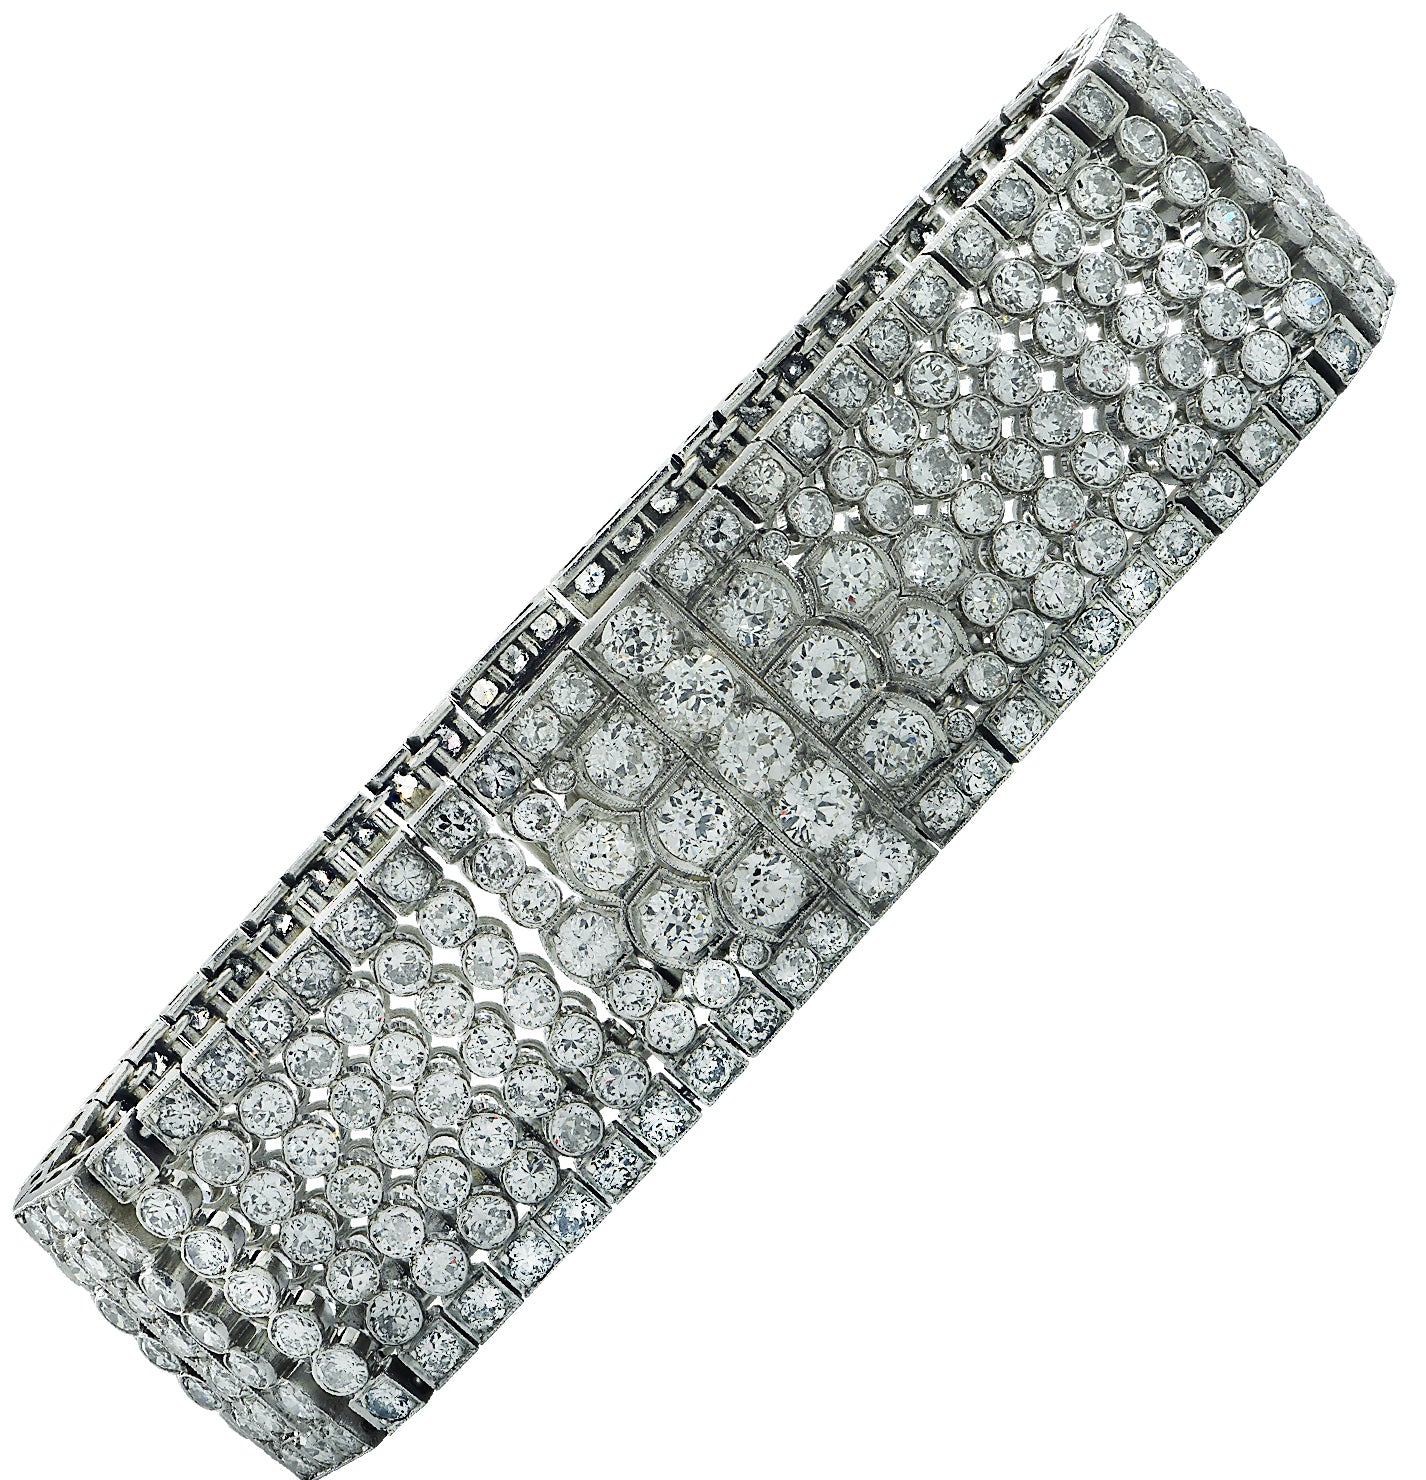 30 carat diamond necklace 15 carat tennis bracelet | Necklace, Diamond,  Chain necklace